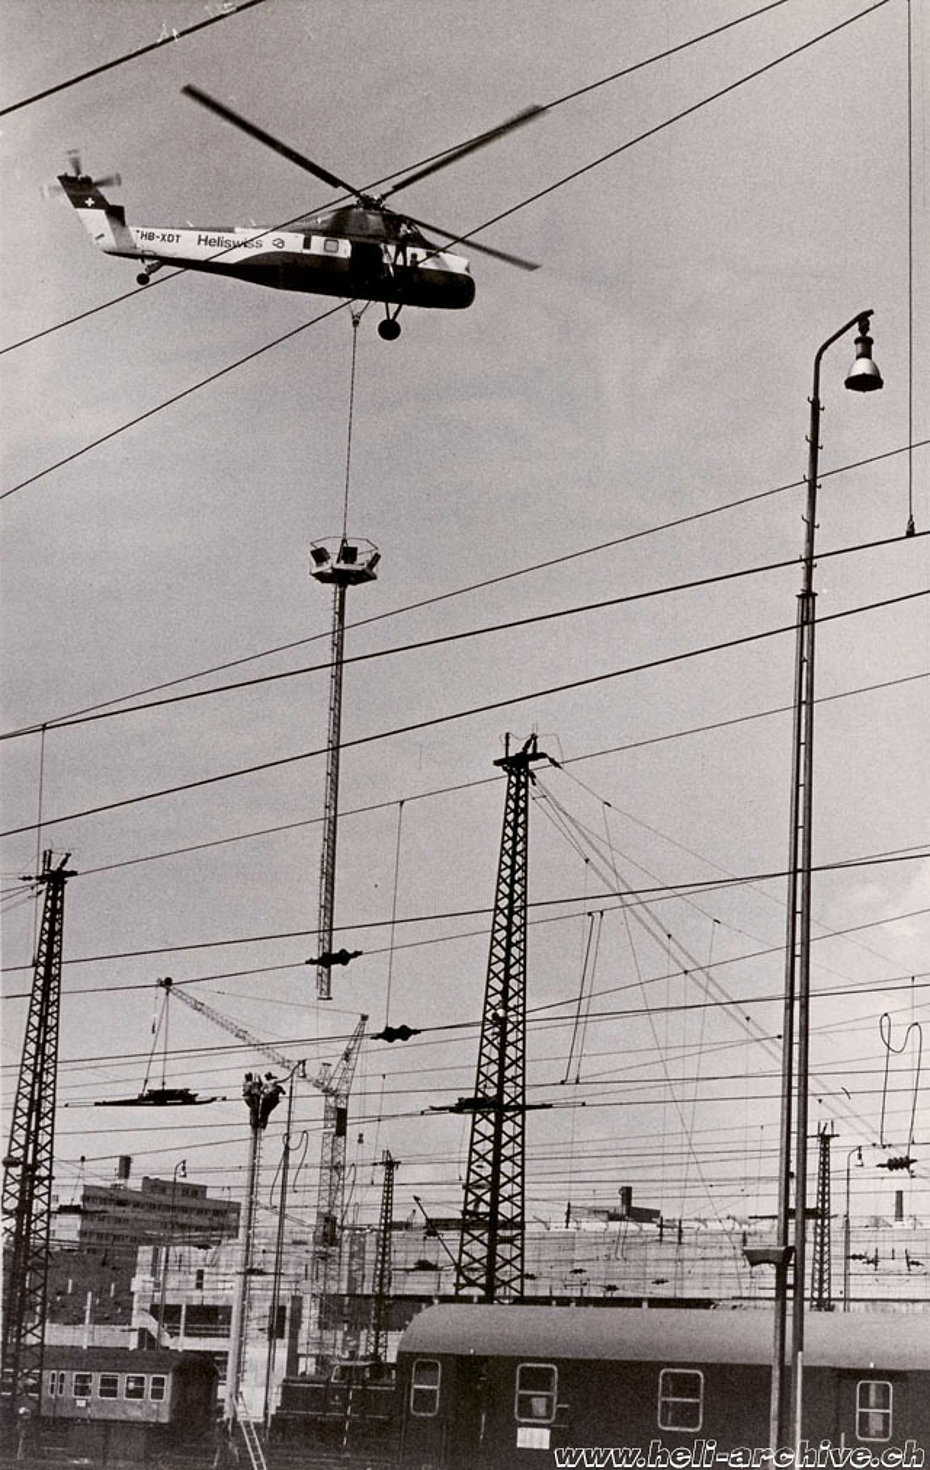 15 giugno 1974 - L'S-58T impegnato nella posa di nuovi lampioni presso la stazione ferroviaria di Francoforte. L'uomo appeso a lato della cabina fornisce al pilota Walter Tschumi le necessarie indicazioni (HAB)